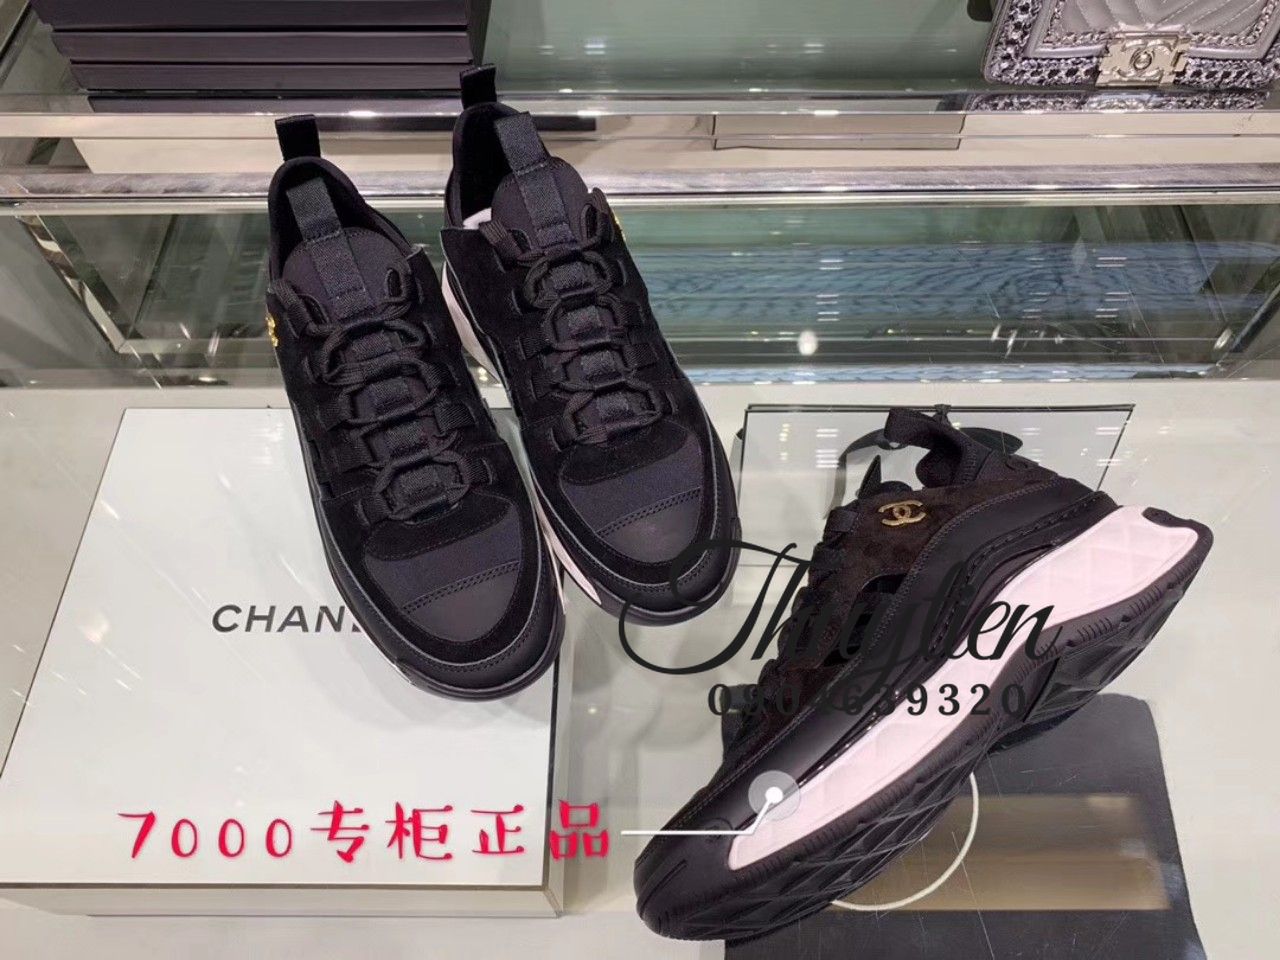 L17-22 Chanel giày thể thao siêu cấp Hoa Nắng - Chúng tôi tin vào sức mạnh  của chất lượng